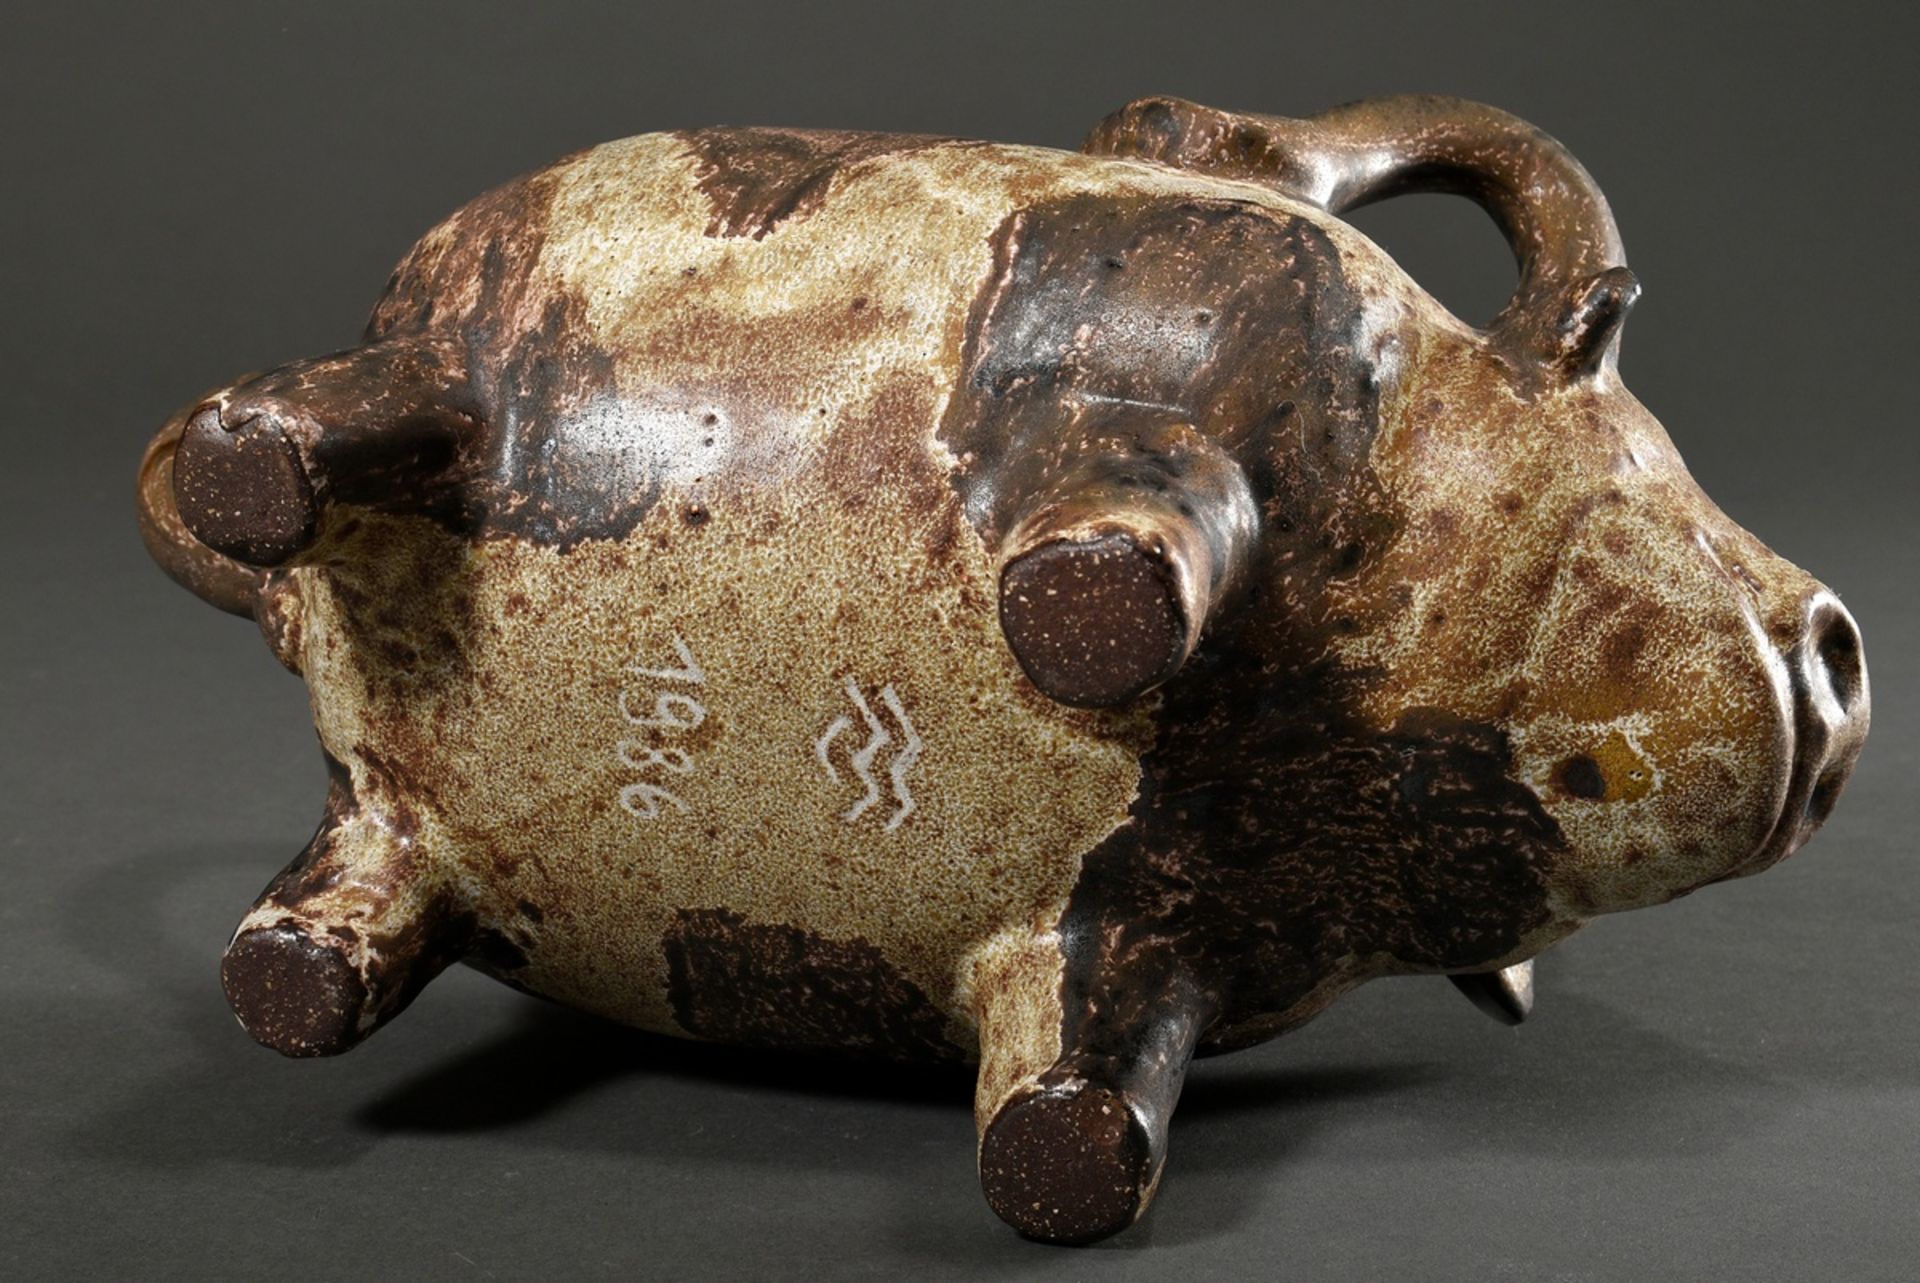 Maetzel, Monika (1917-2010) studio ceramics vessel in animal form "bull", ceramic white/brown glaze - Image 6 of 6